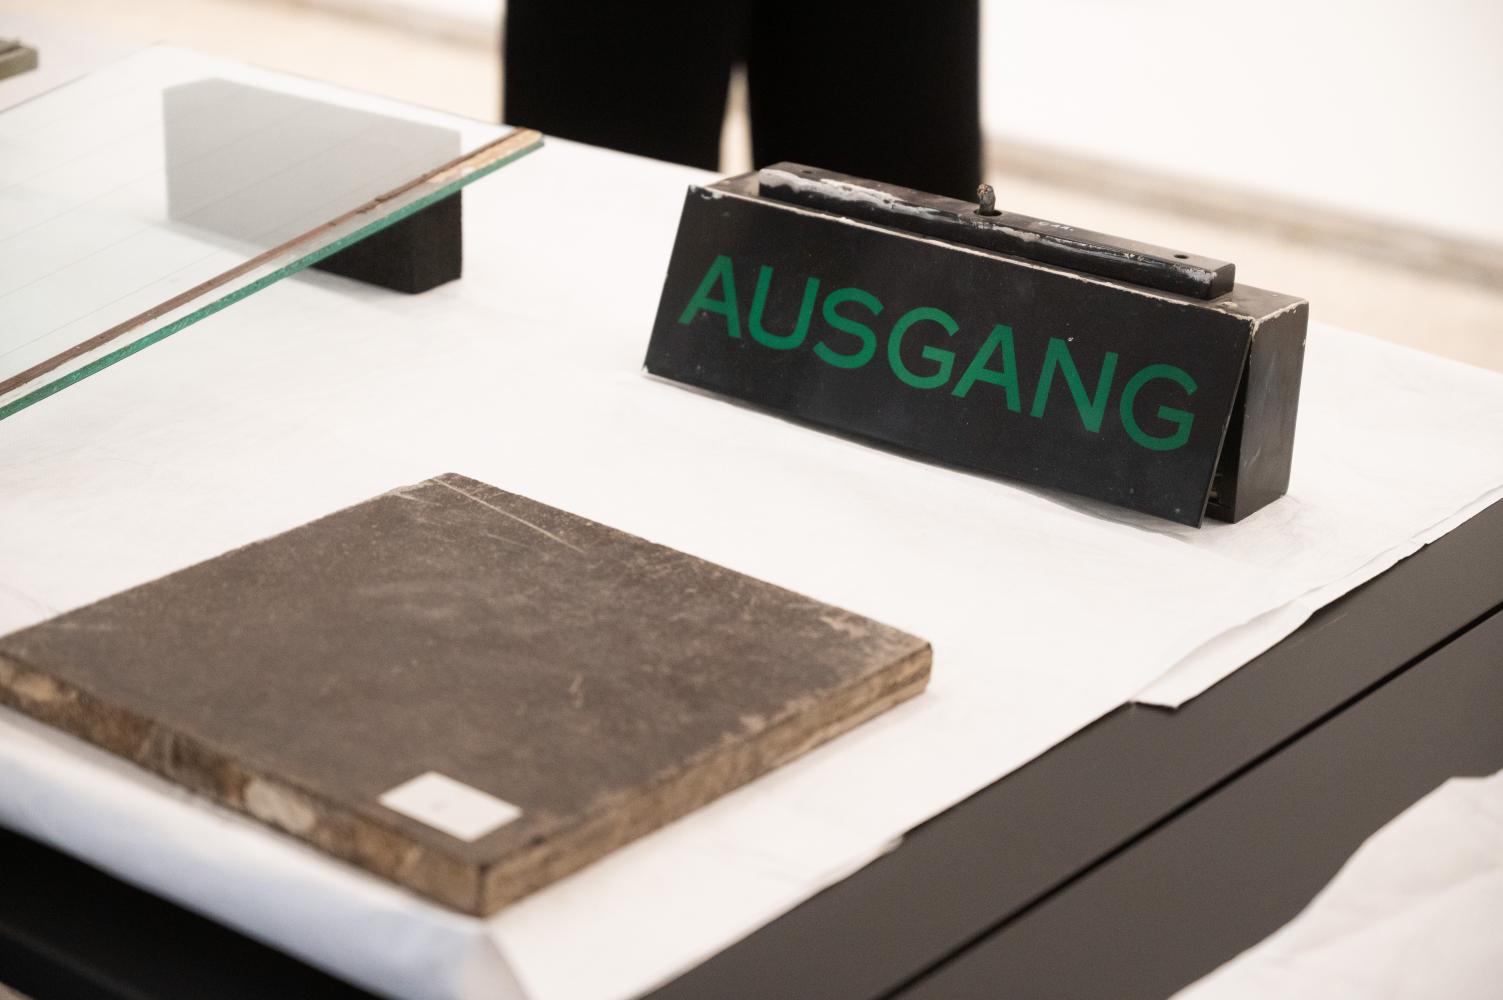 Originaler Bauteile aus der Neuen Nationalgalerie werden an das Bauforschungsarchiv der Stiftung Bauhaus Dessau übergeben